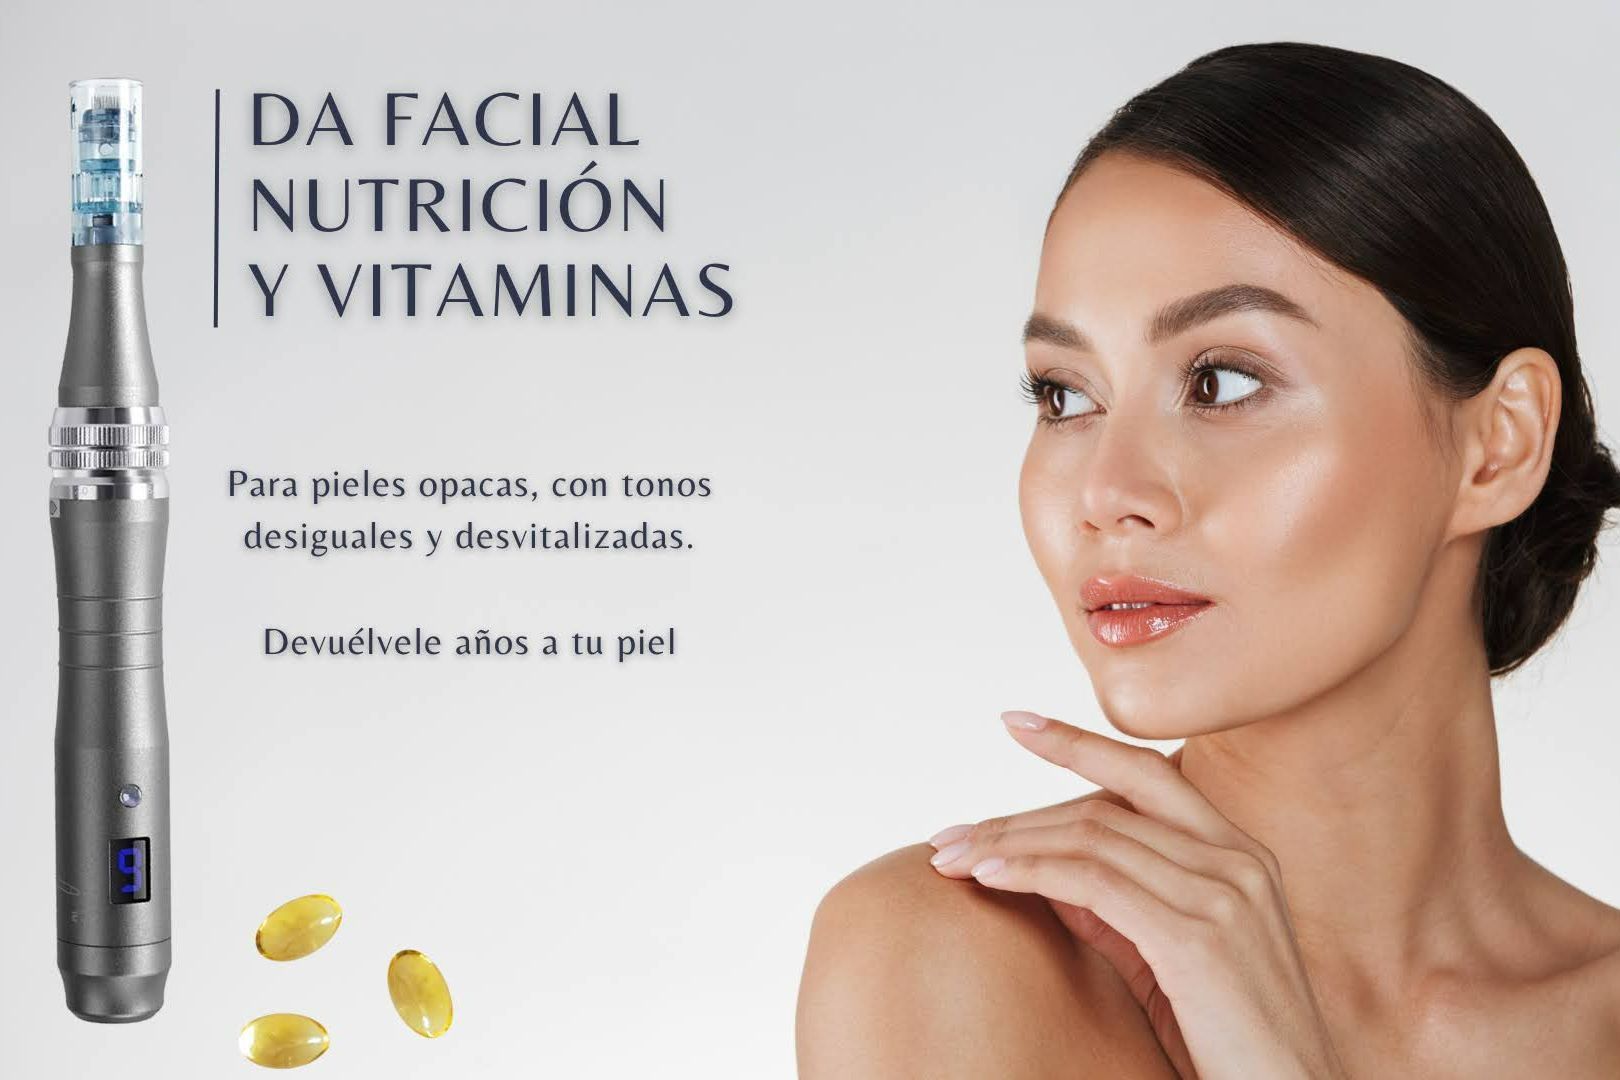 DA Facial Nutrition & Vitaminas portfolio